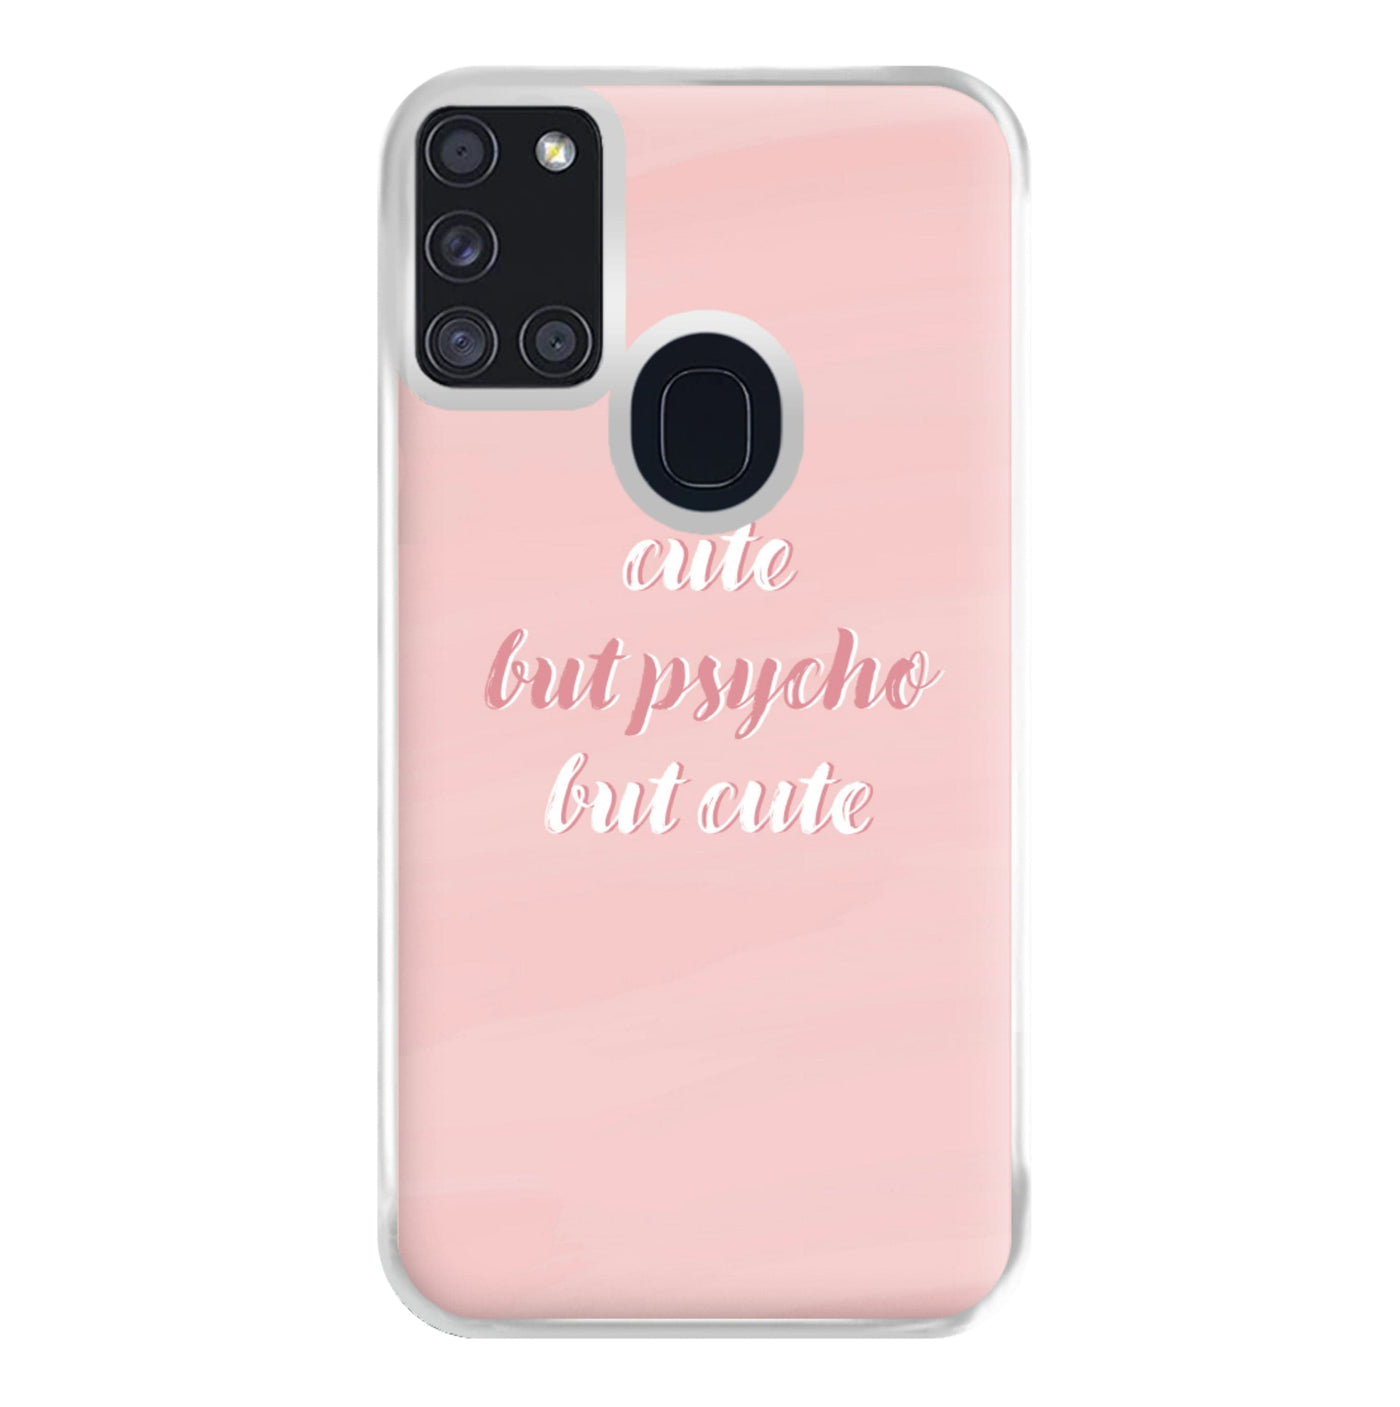 Cute But Psycho But Cute Phone Case